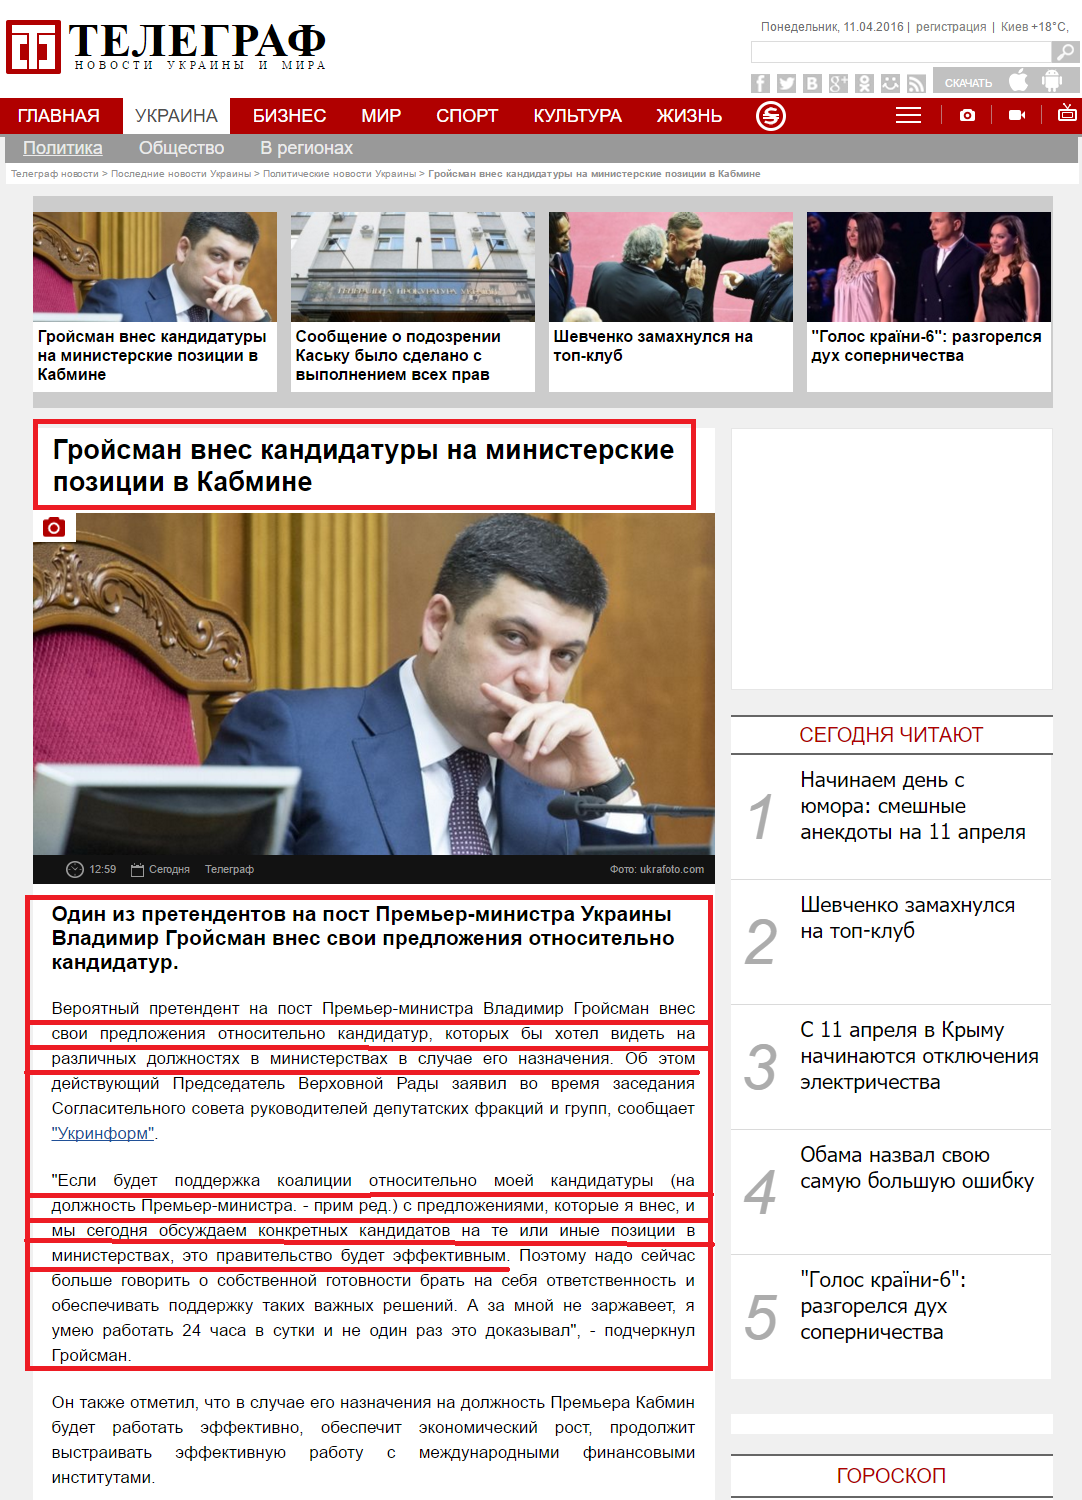 http://telegraf.com.ua/ukraina/politika/2393531-groysman-vnes-kandidaturyi-na-ministerskie-pozitsii-v-kabmine.html